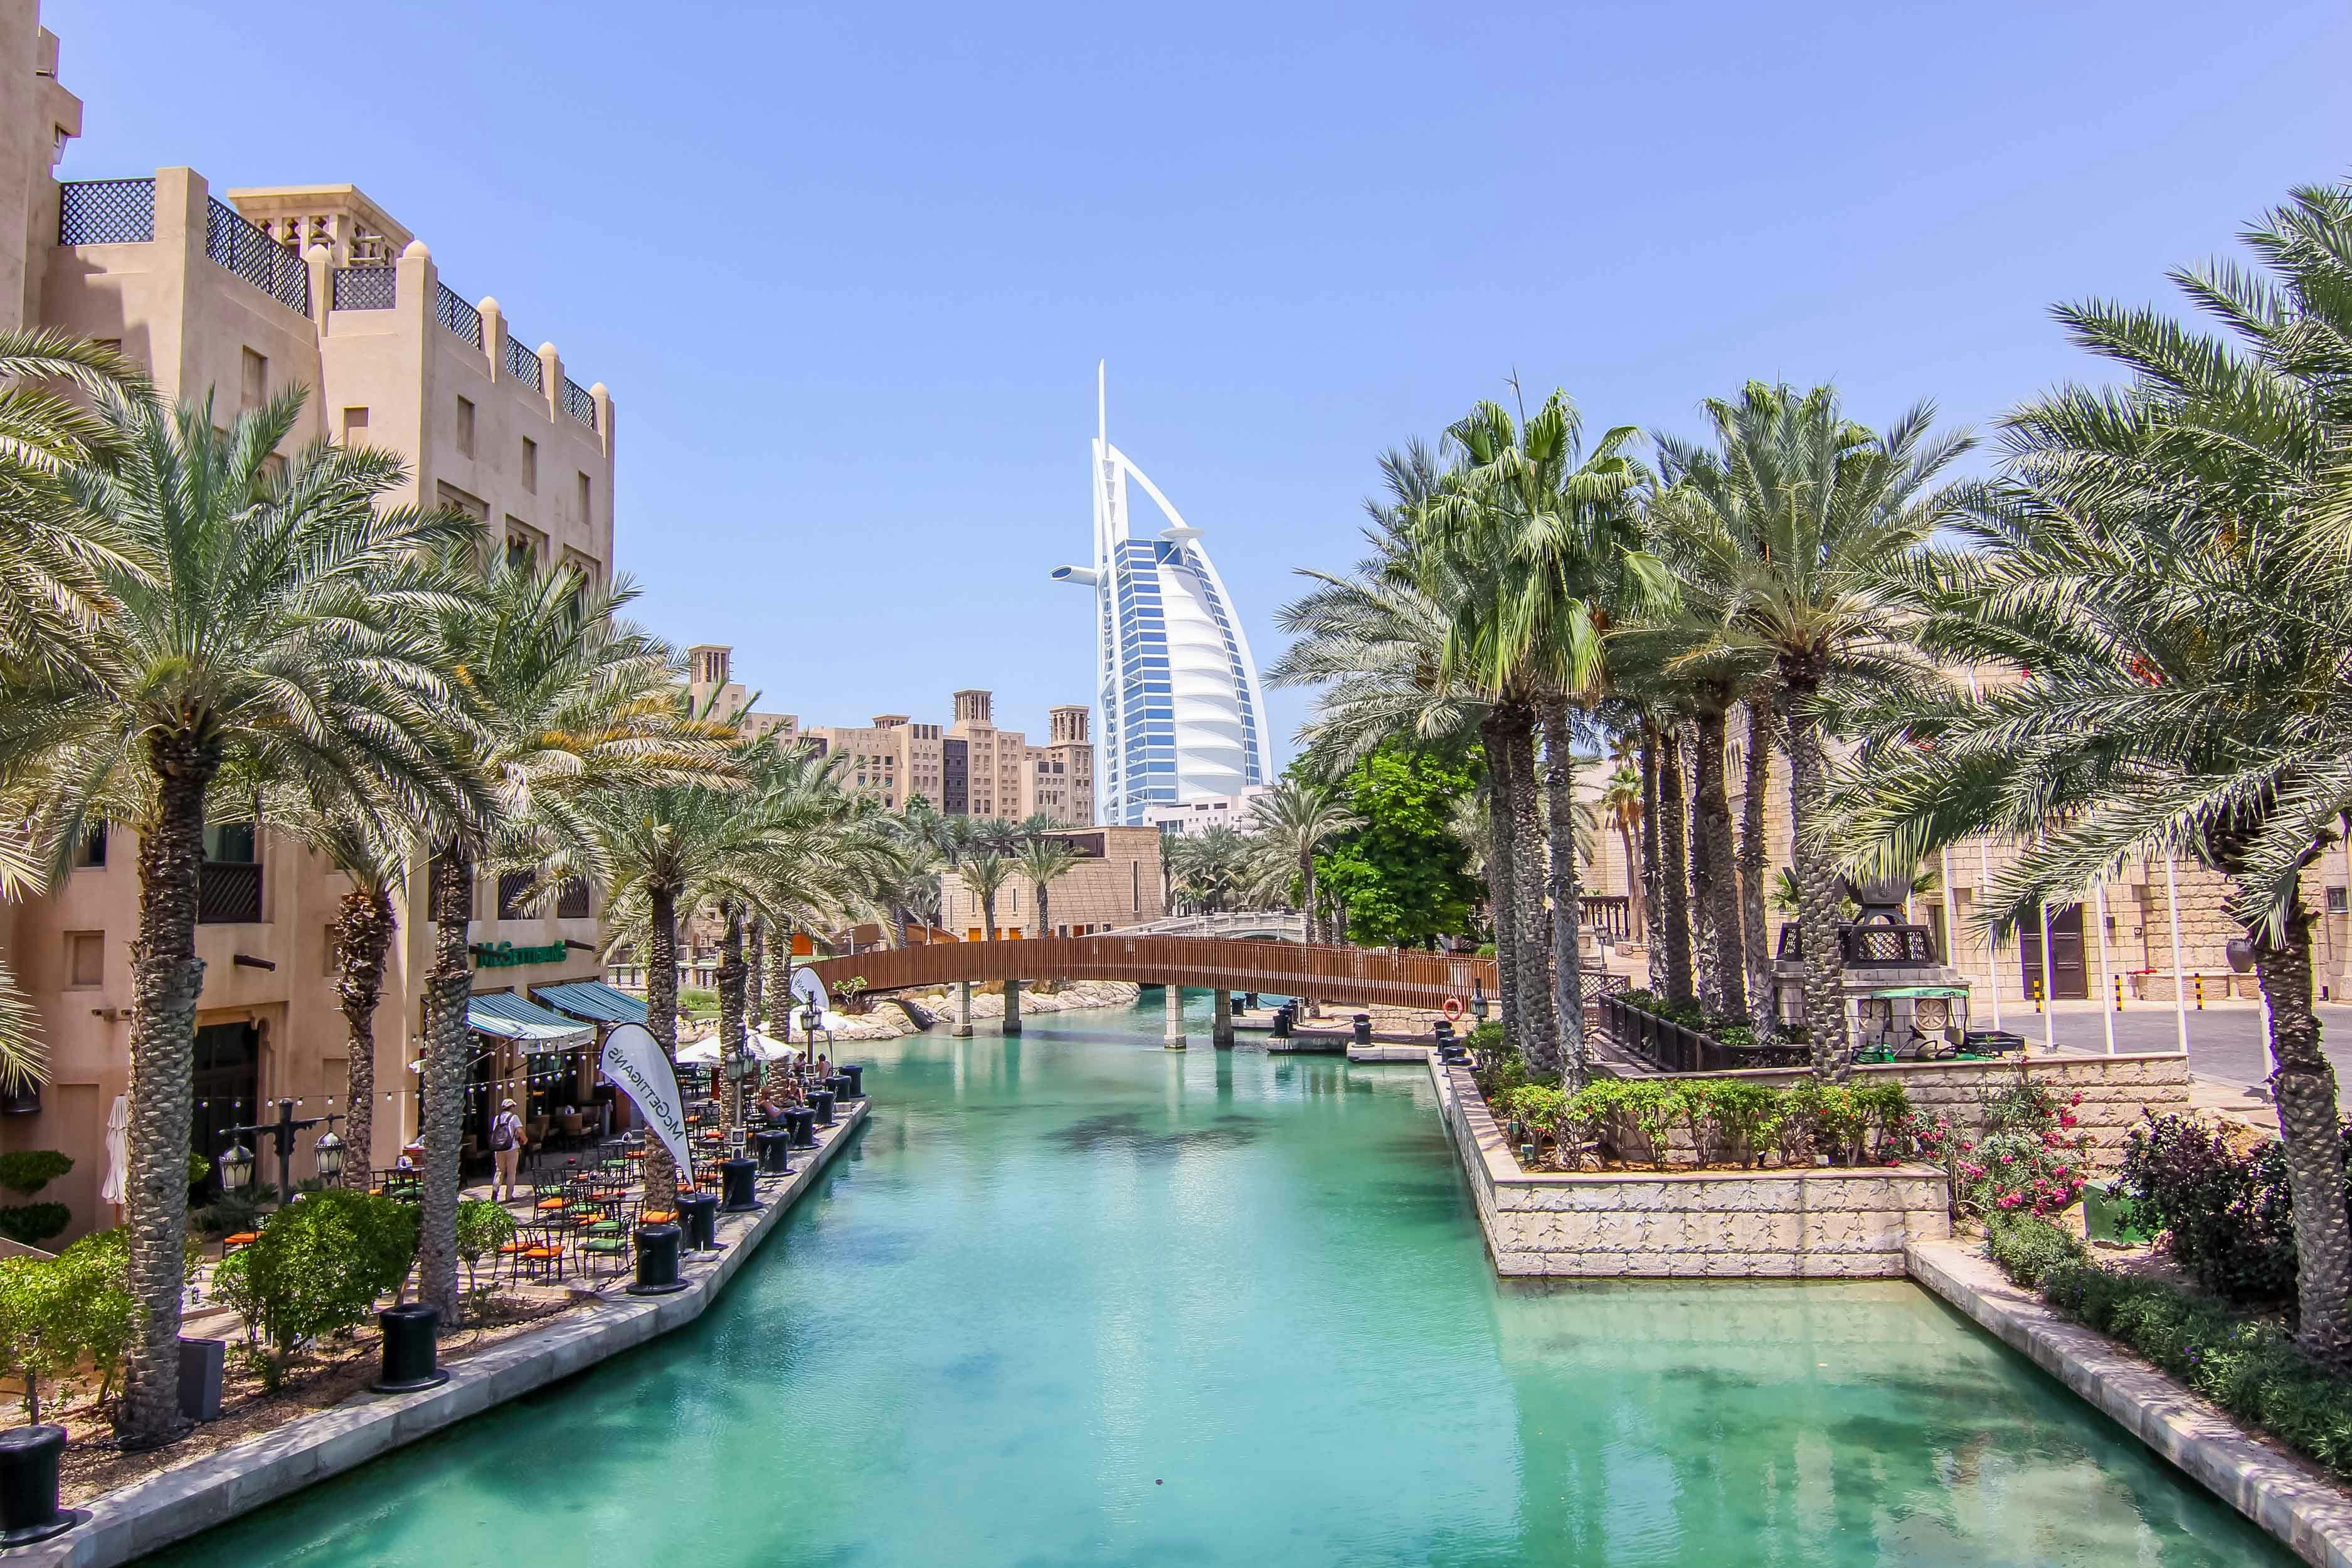 The Golden City - Dubai city tour